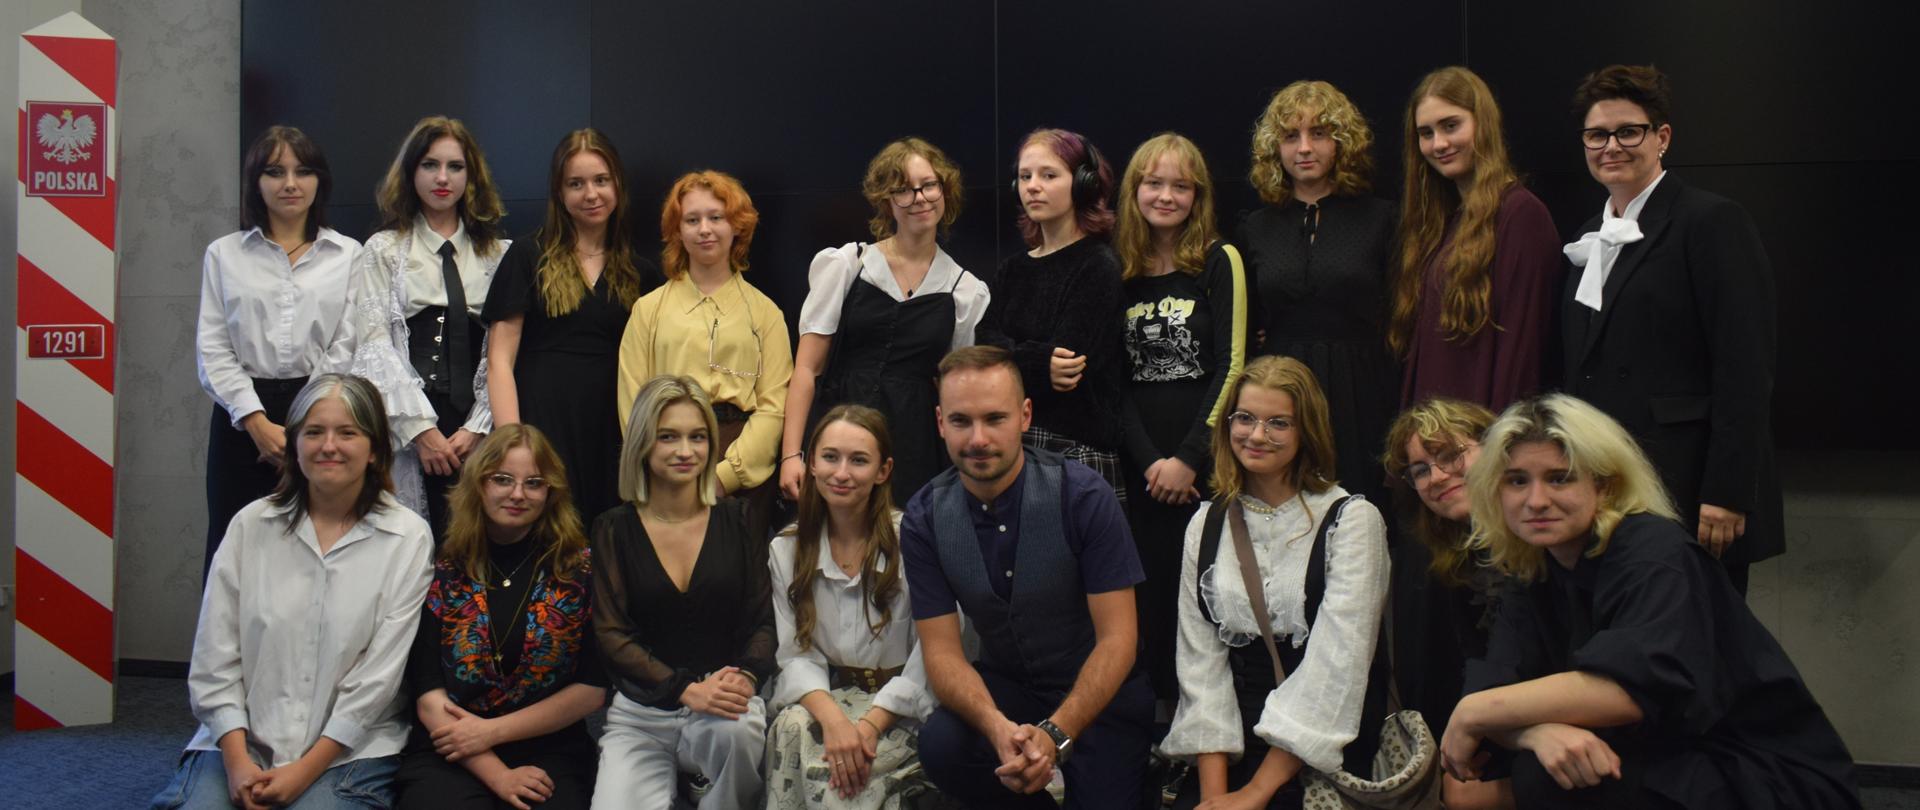 Grupa uczniów i osoby dorosłe pozuje do zdjęcia w sali IPN w Lublinie . W pierwszym rzędzie część z nich klęczy wraz z Tomaszem Banaszkiewiczem. Wyżej za nimi inni uczniowie stoją razem z kobietą.